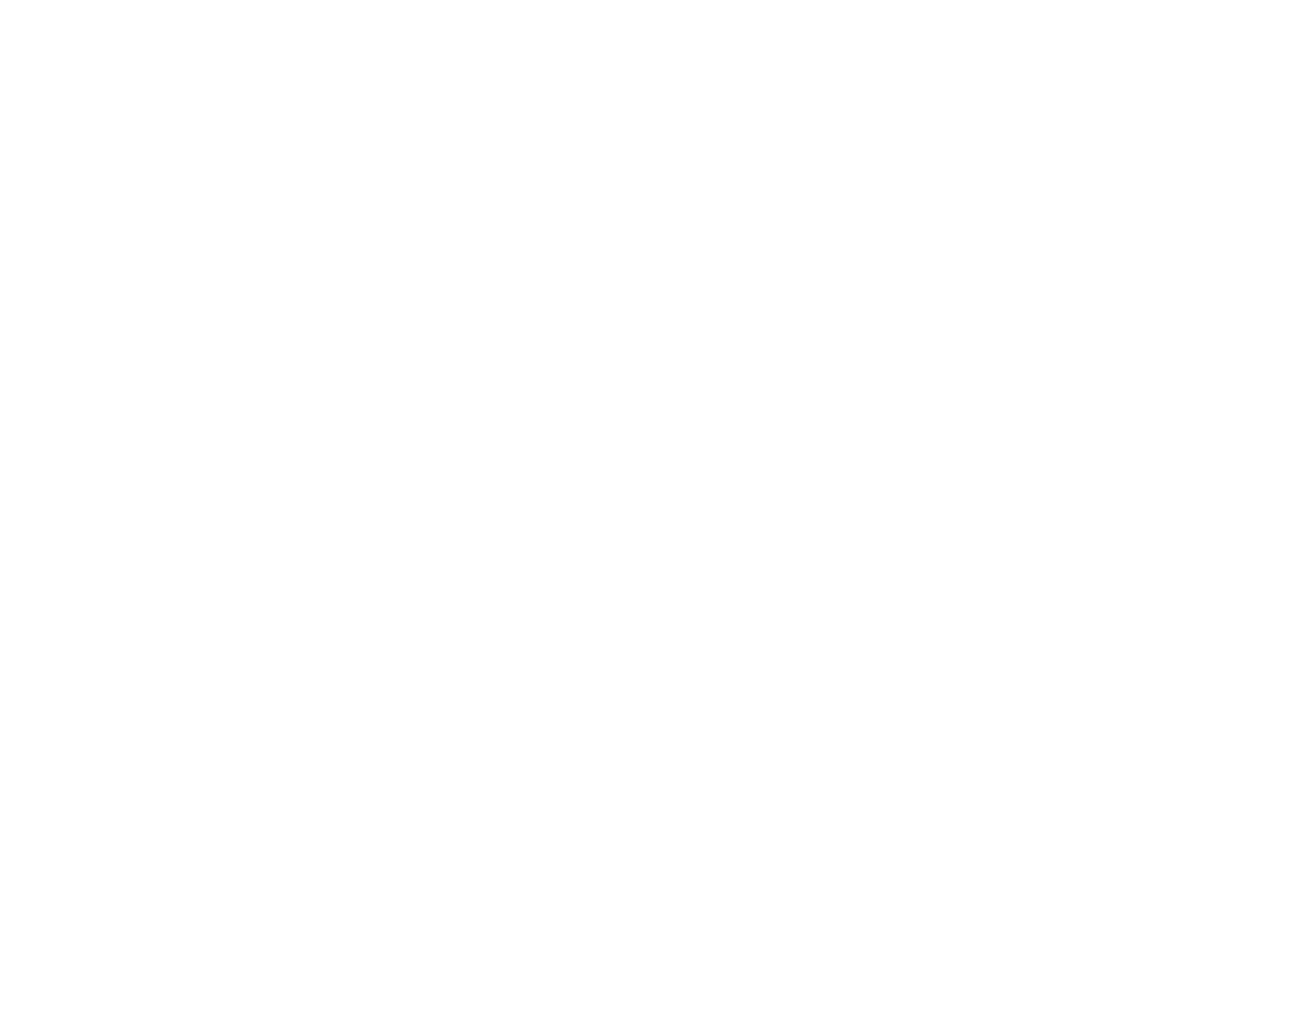 Orion Corporation logo for dark backgrounds (transparent PNG)